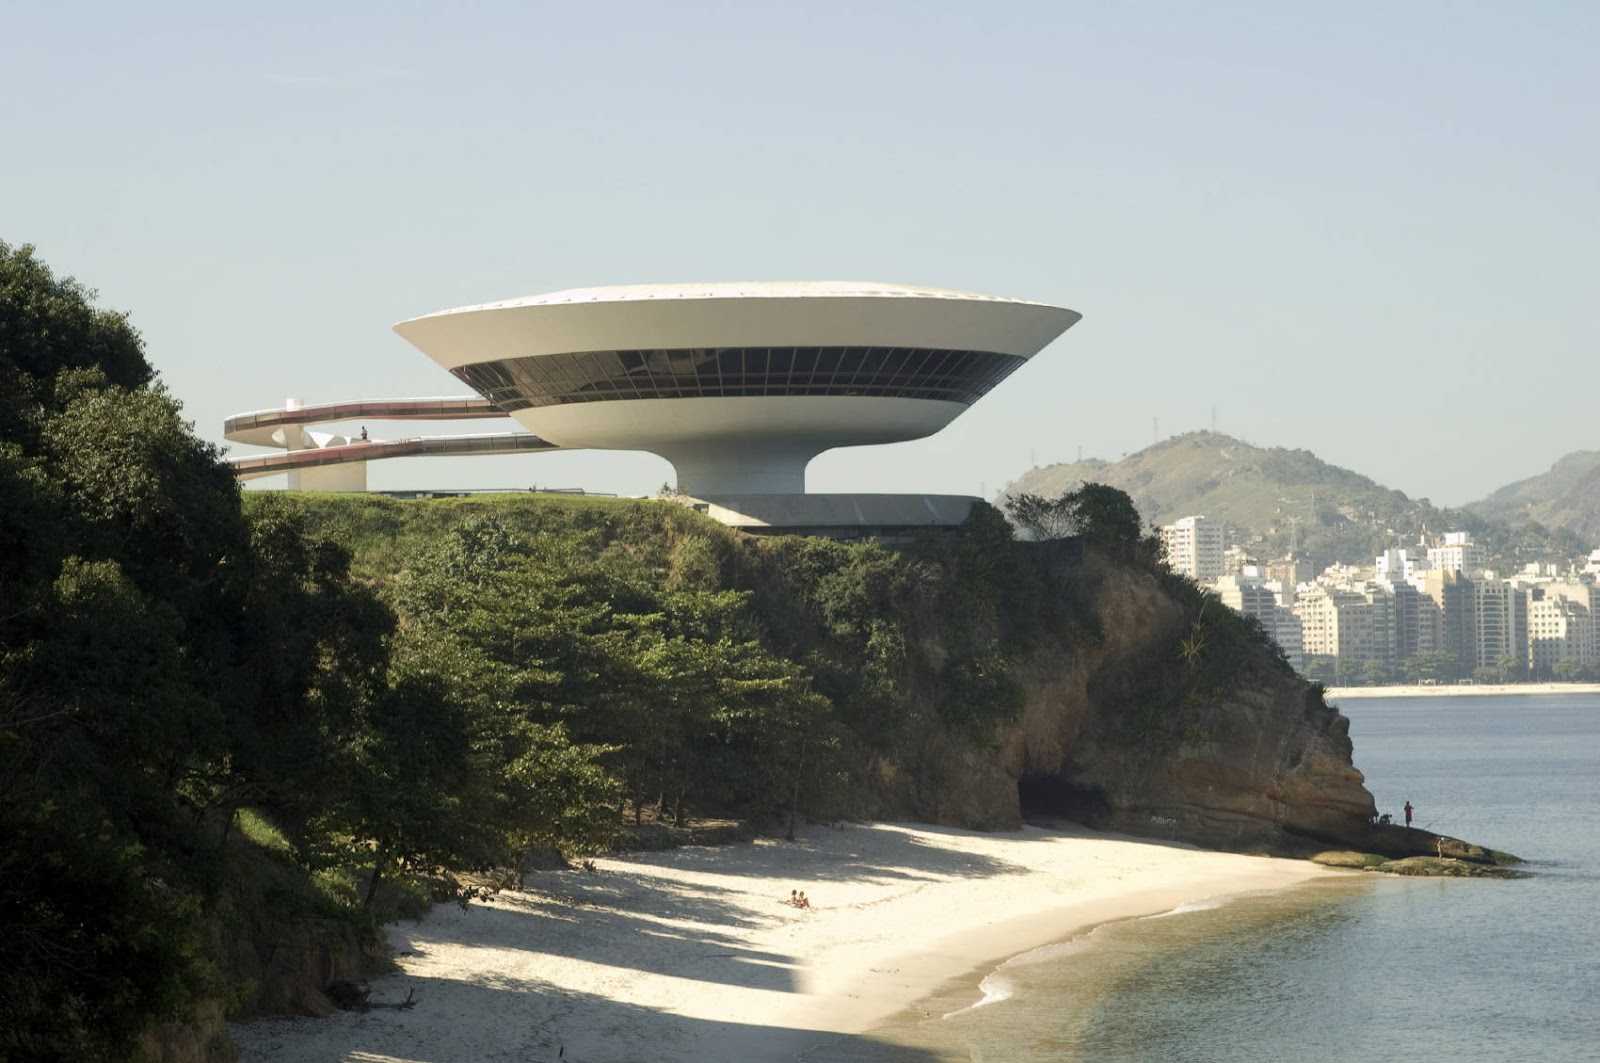 96 странных зданий в мире, которые показывают, где современные архитекторы не сдерживали свою фантазию